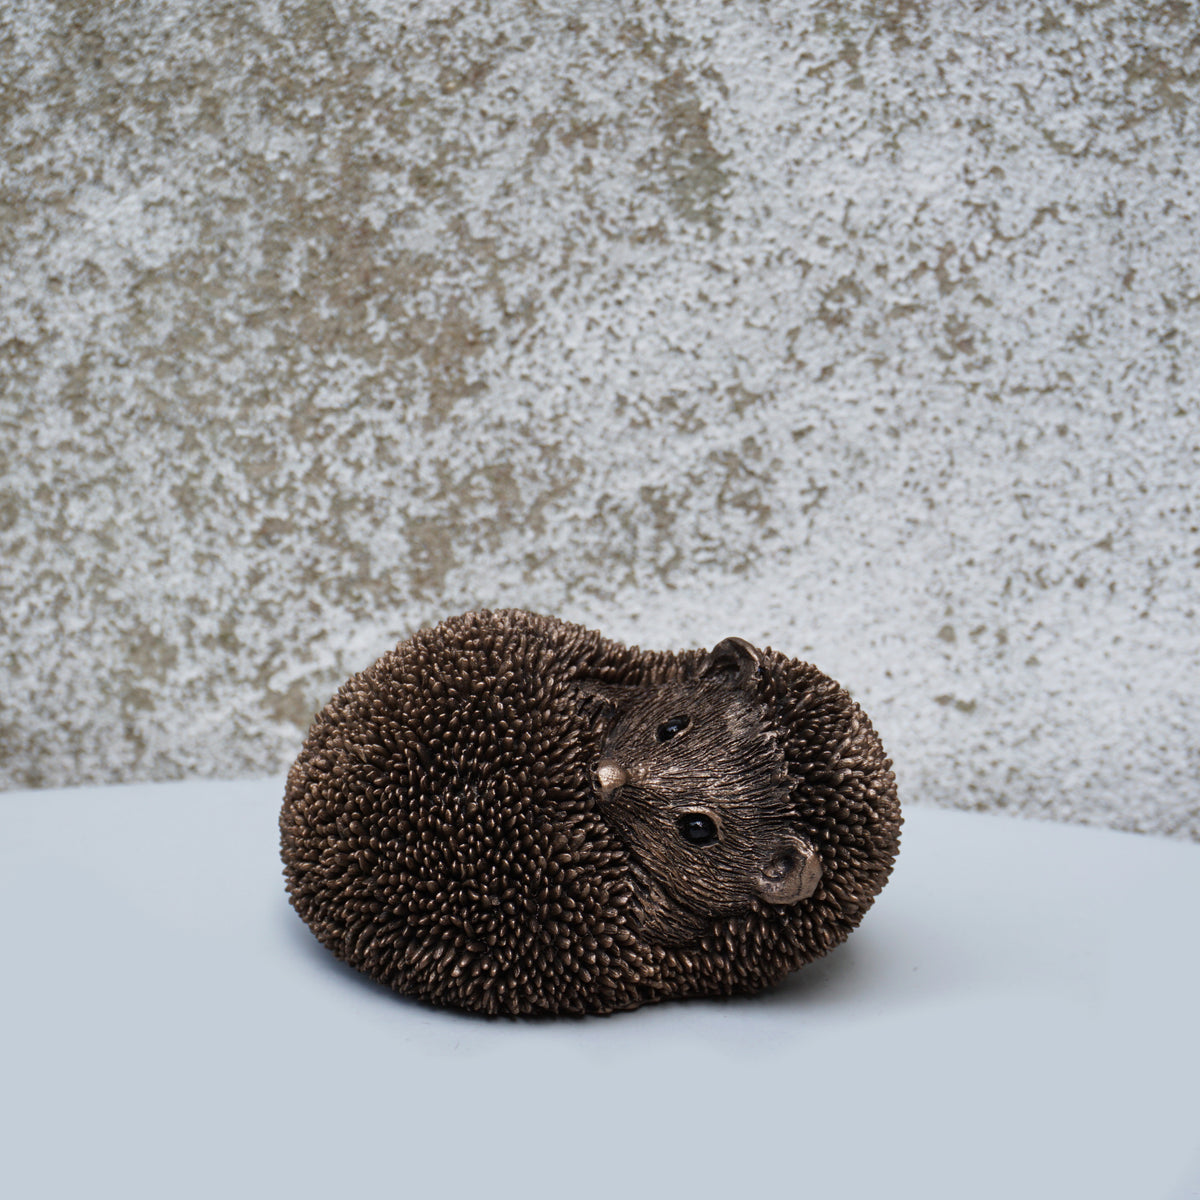 Spike - Hedgehog relaxing